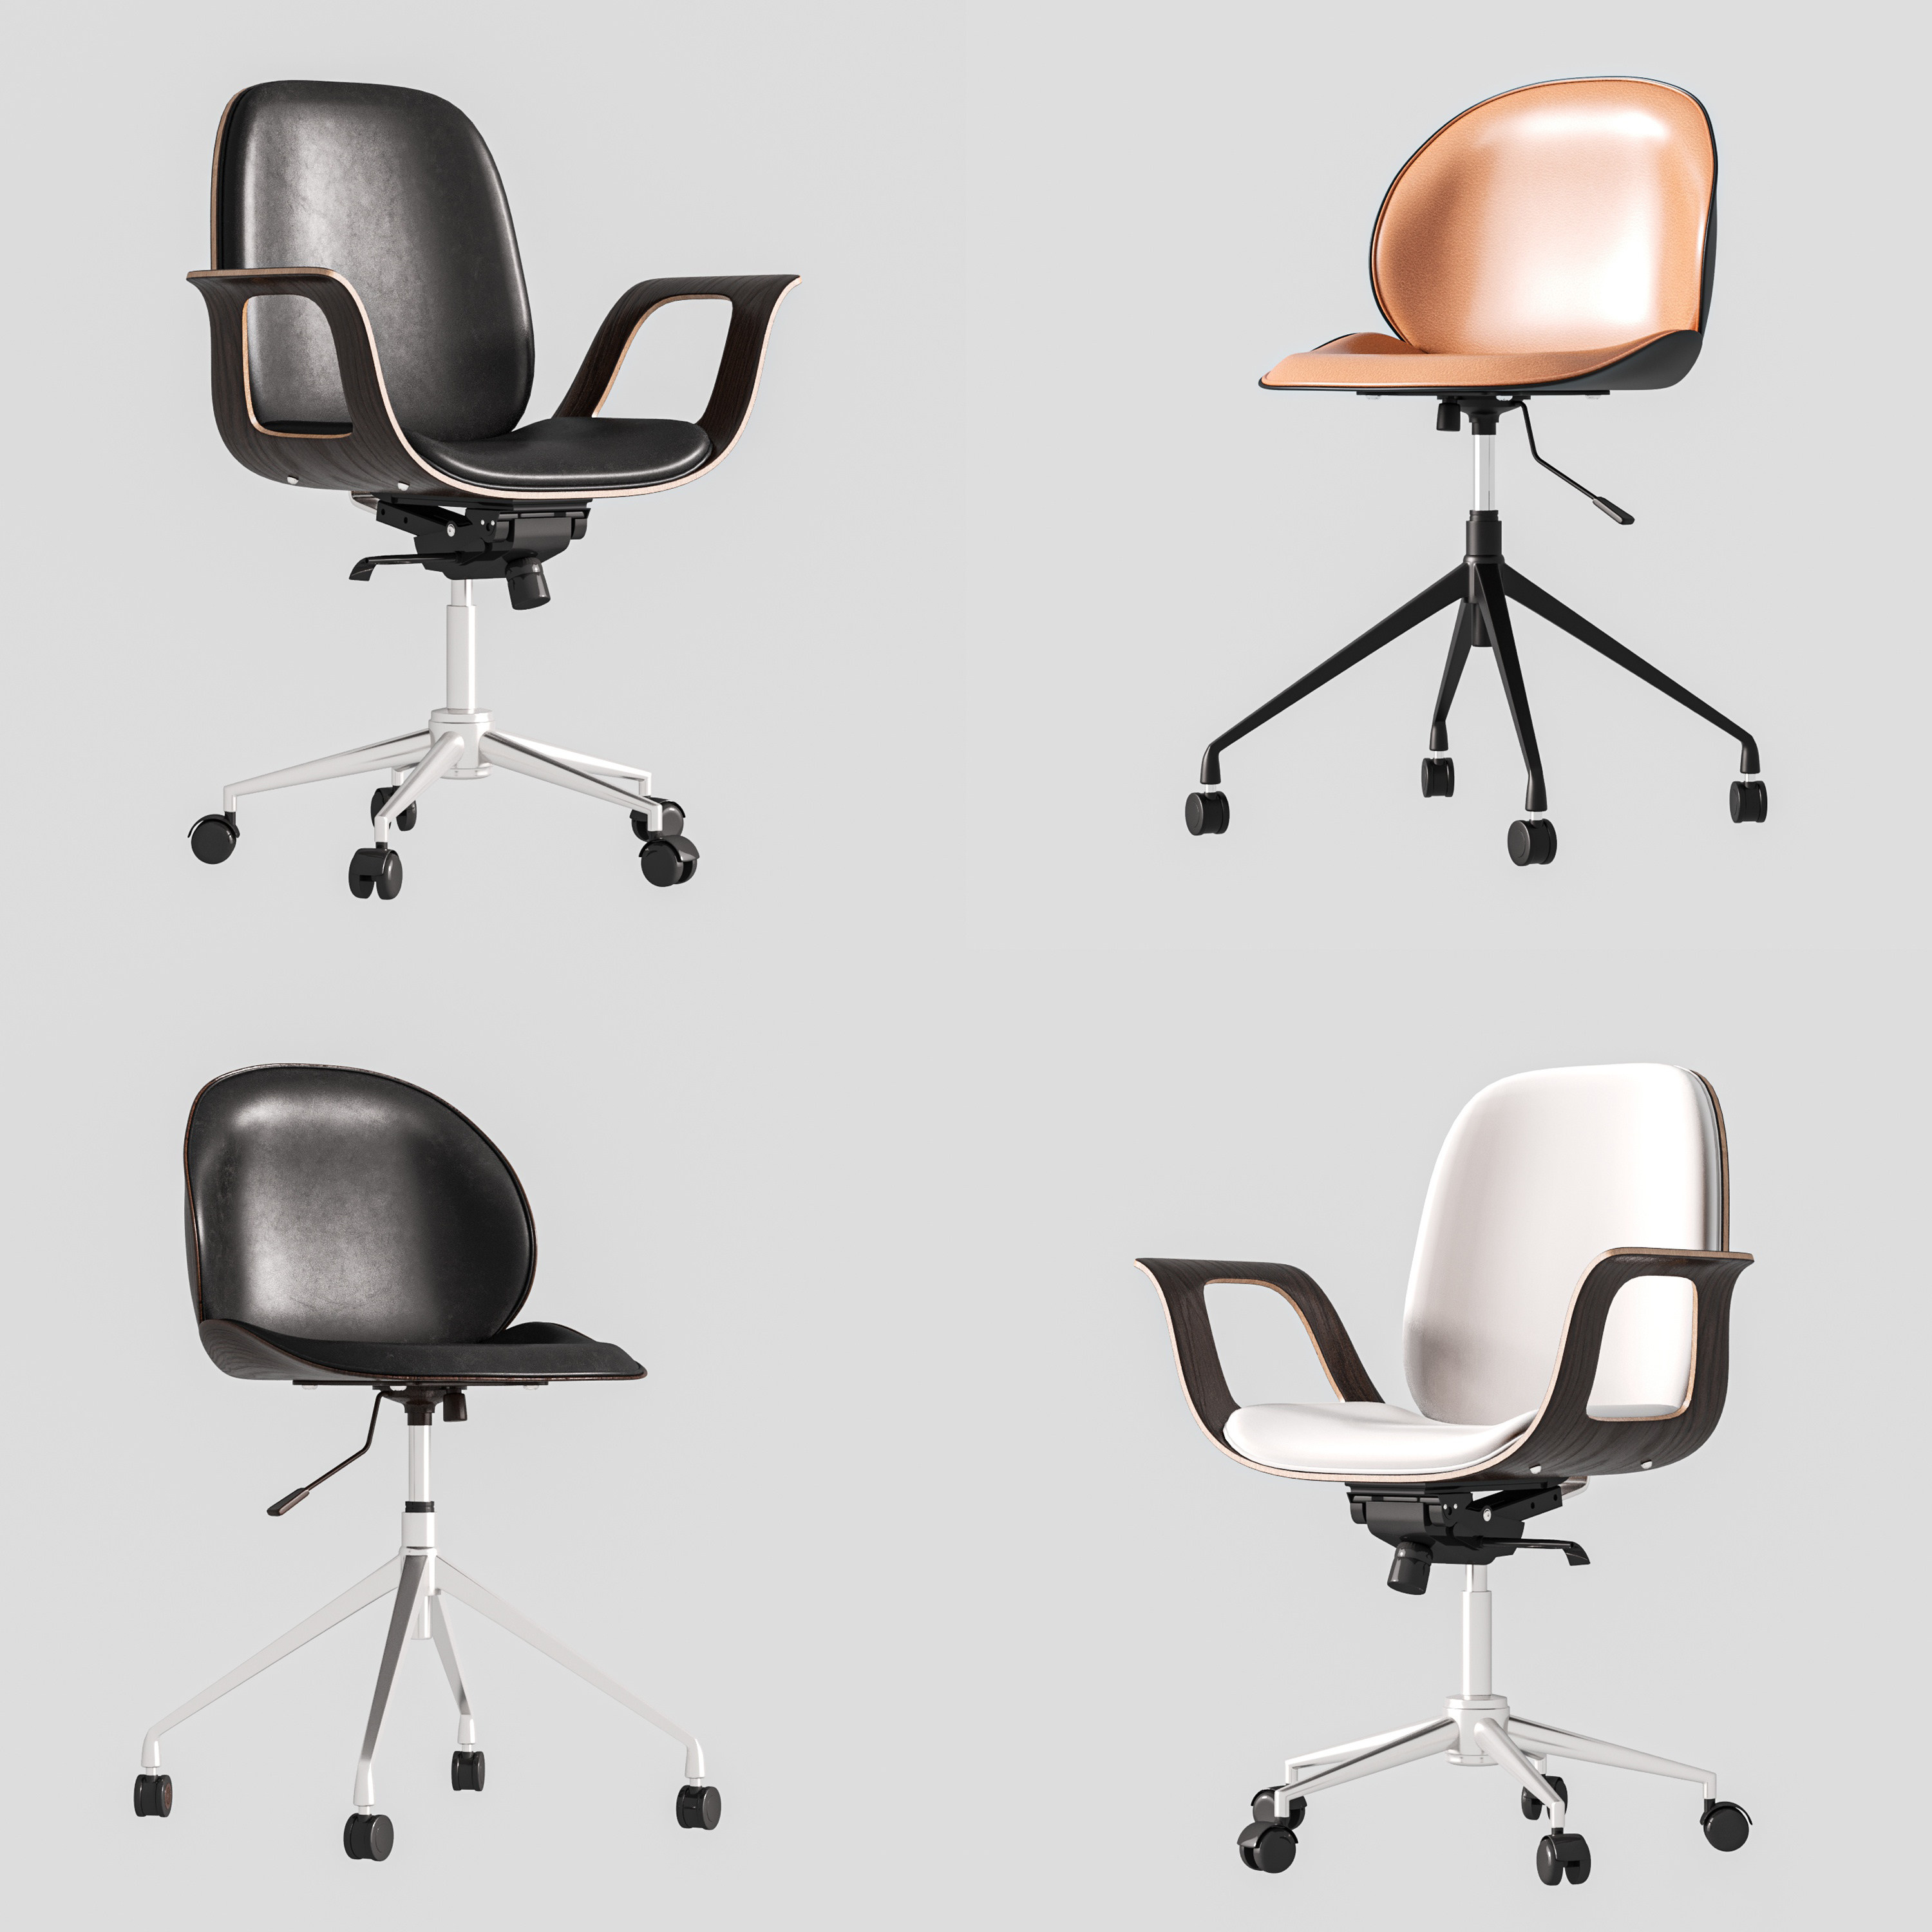 12现代办公椅,带轮子的可旋转的椅子,皮质座椅,布面座椅,3d模型下载